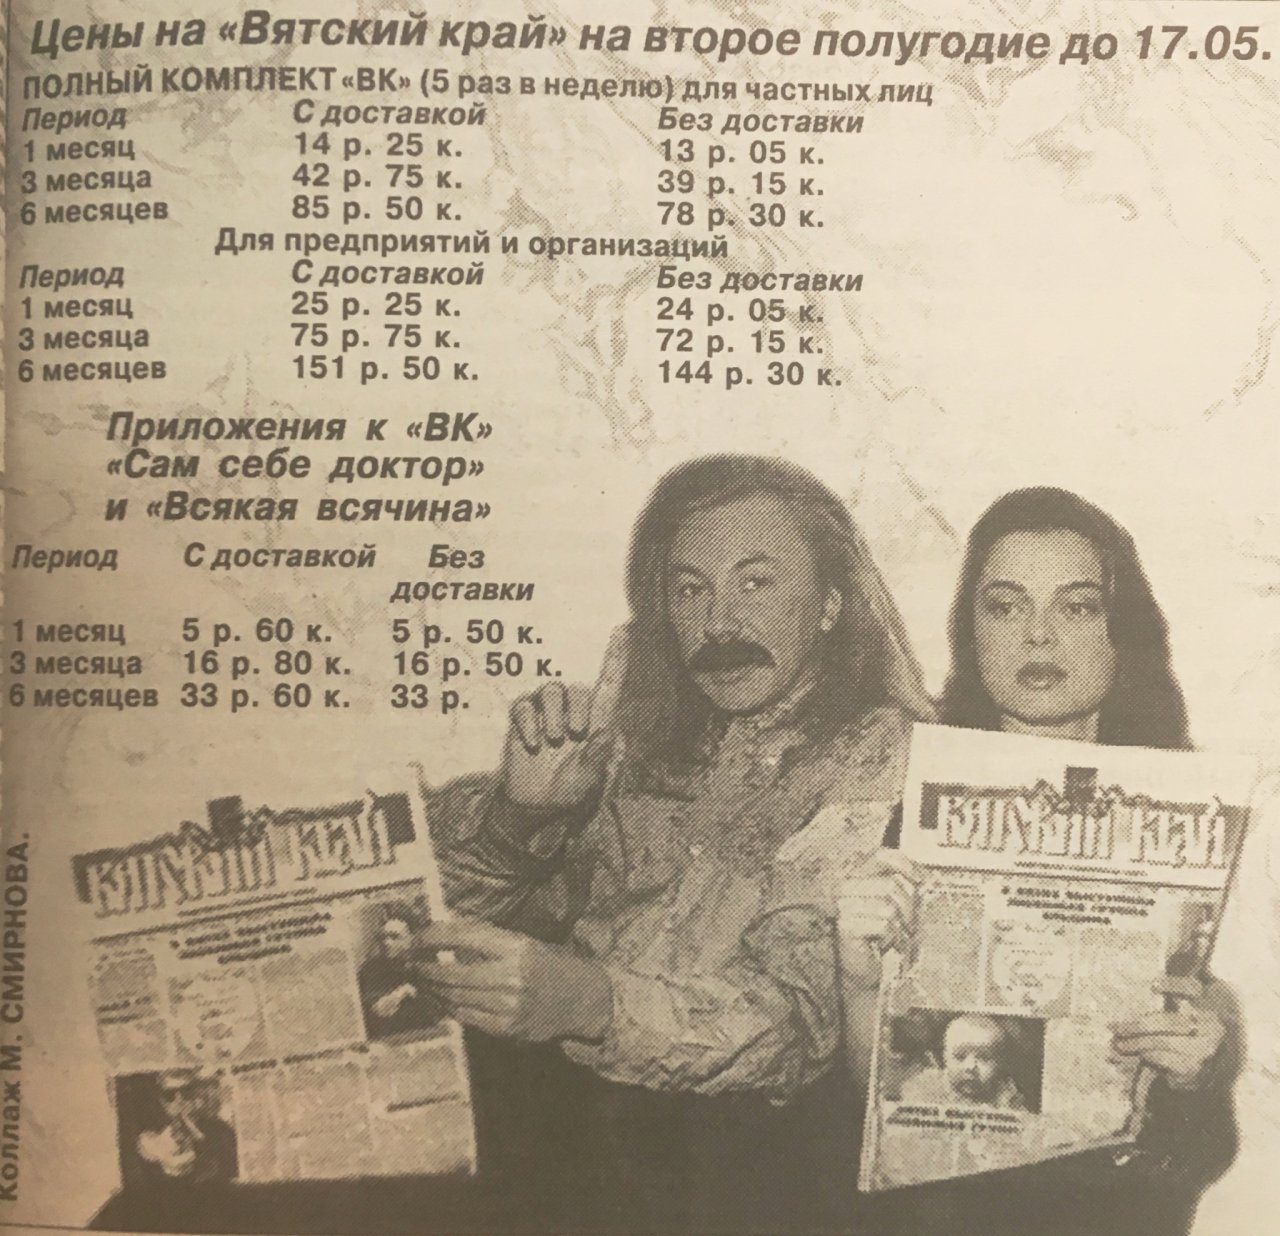 Реклама с президентом США, скандал на концерте "Иванушек":  о чем писали кировские газеты 1 апреля 10, 20 и 30 лет назад